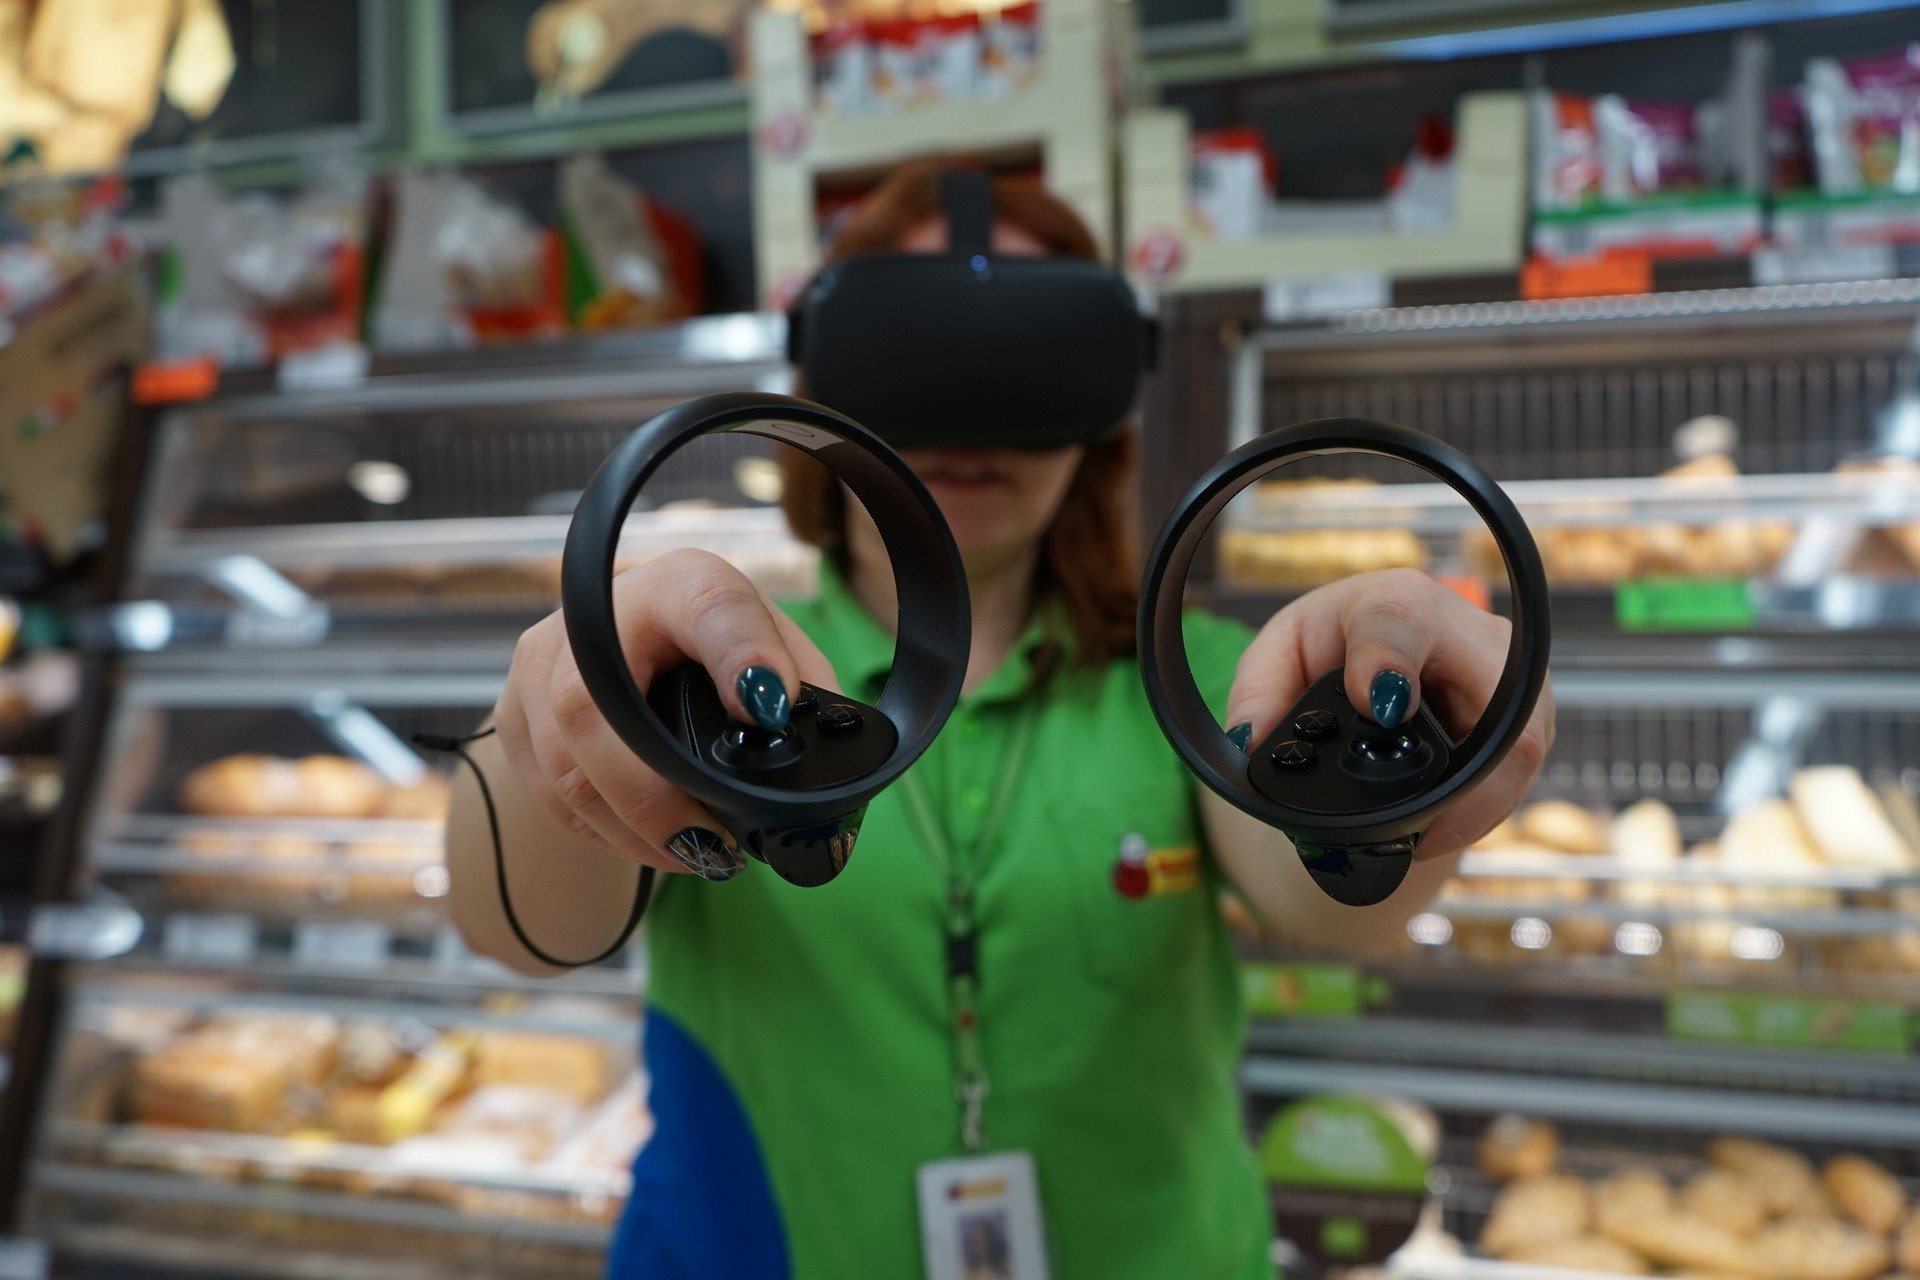 W Biedronce w Łodzi uczą się wirtualnie piec chleb. Biedronka testuje gogle  wirtualnej rzeczywistości ZDJĘCIA | Dziennik Łódzki